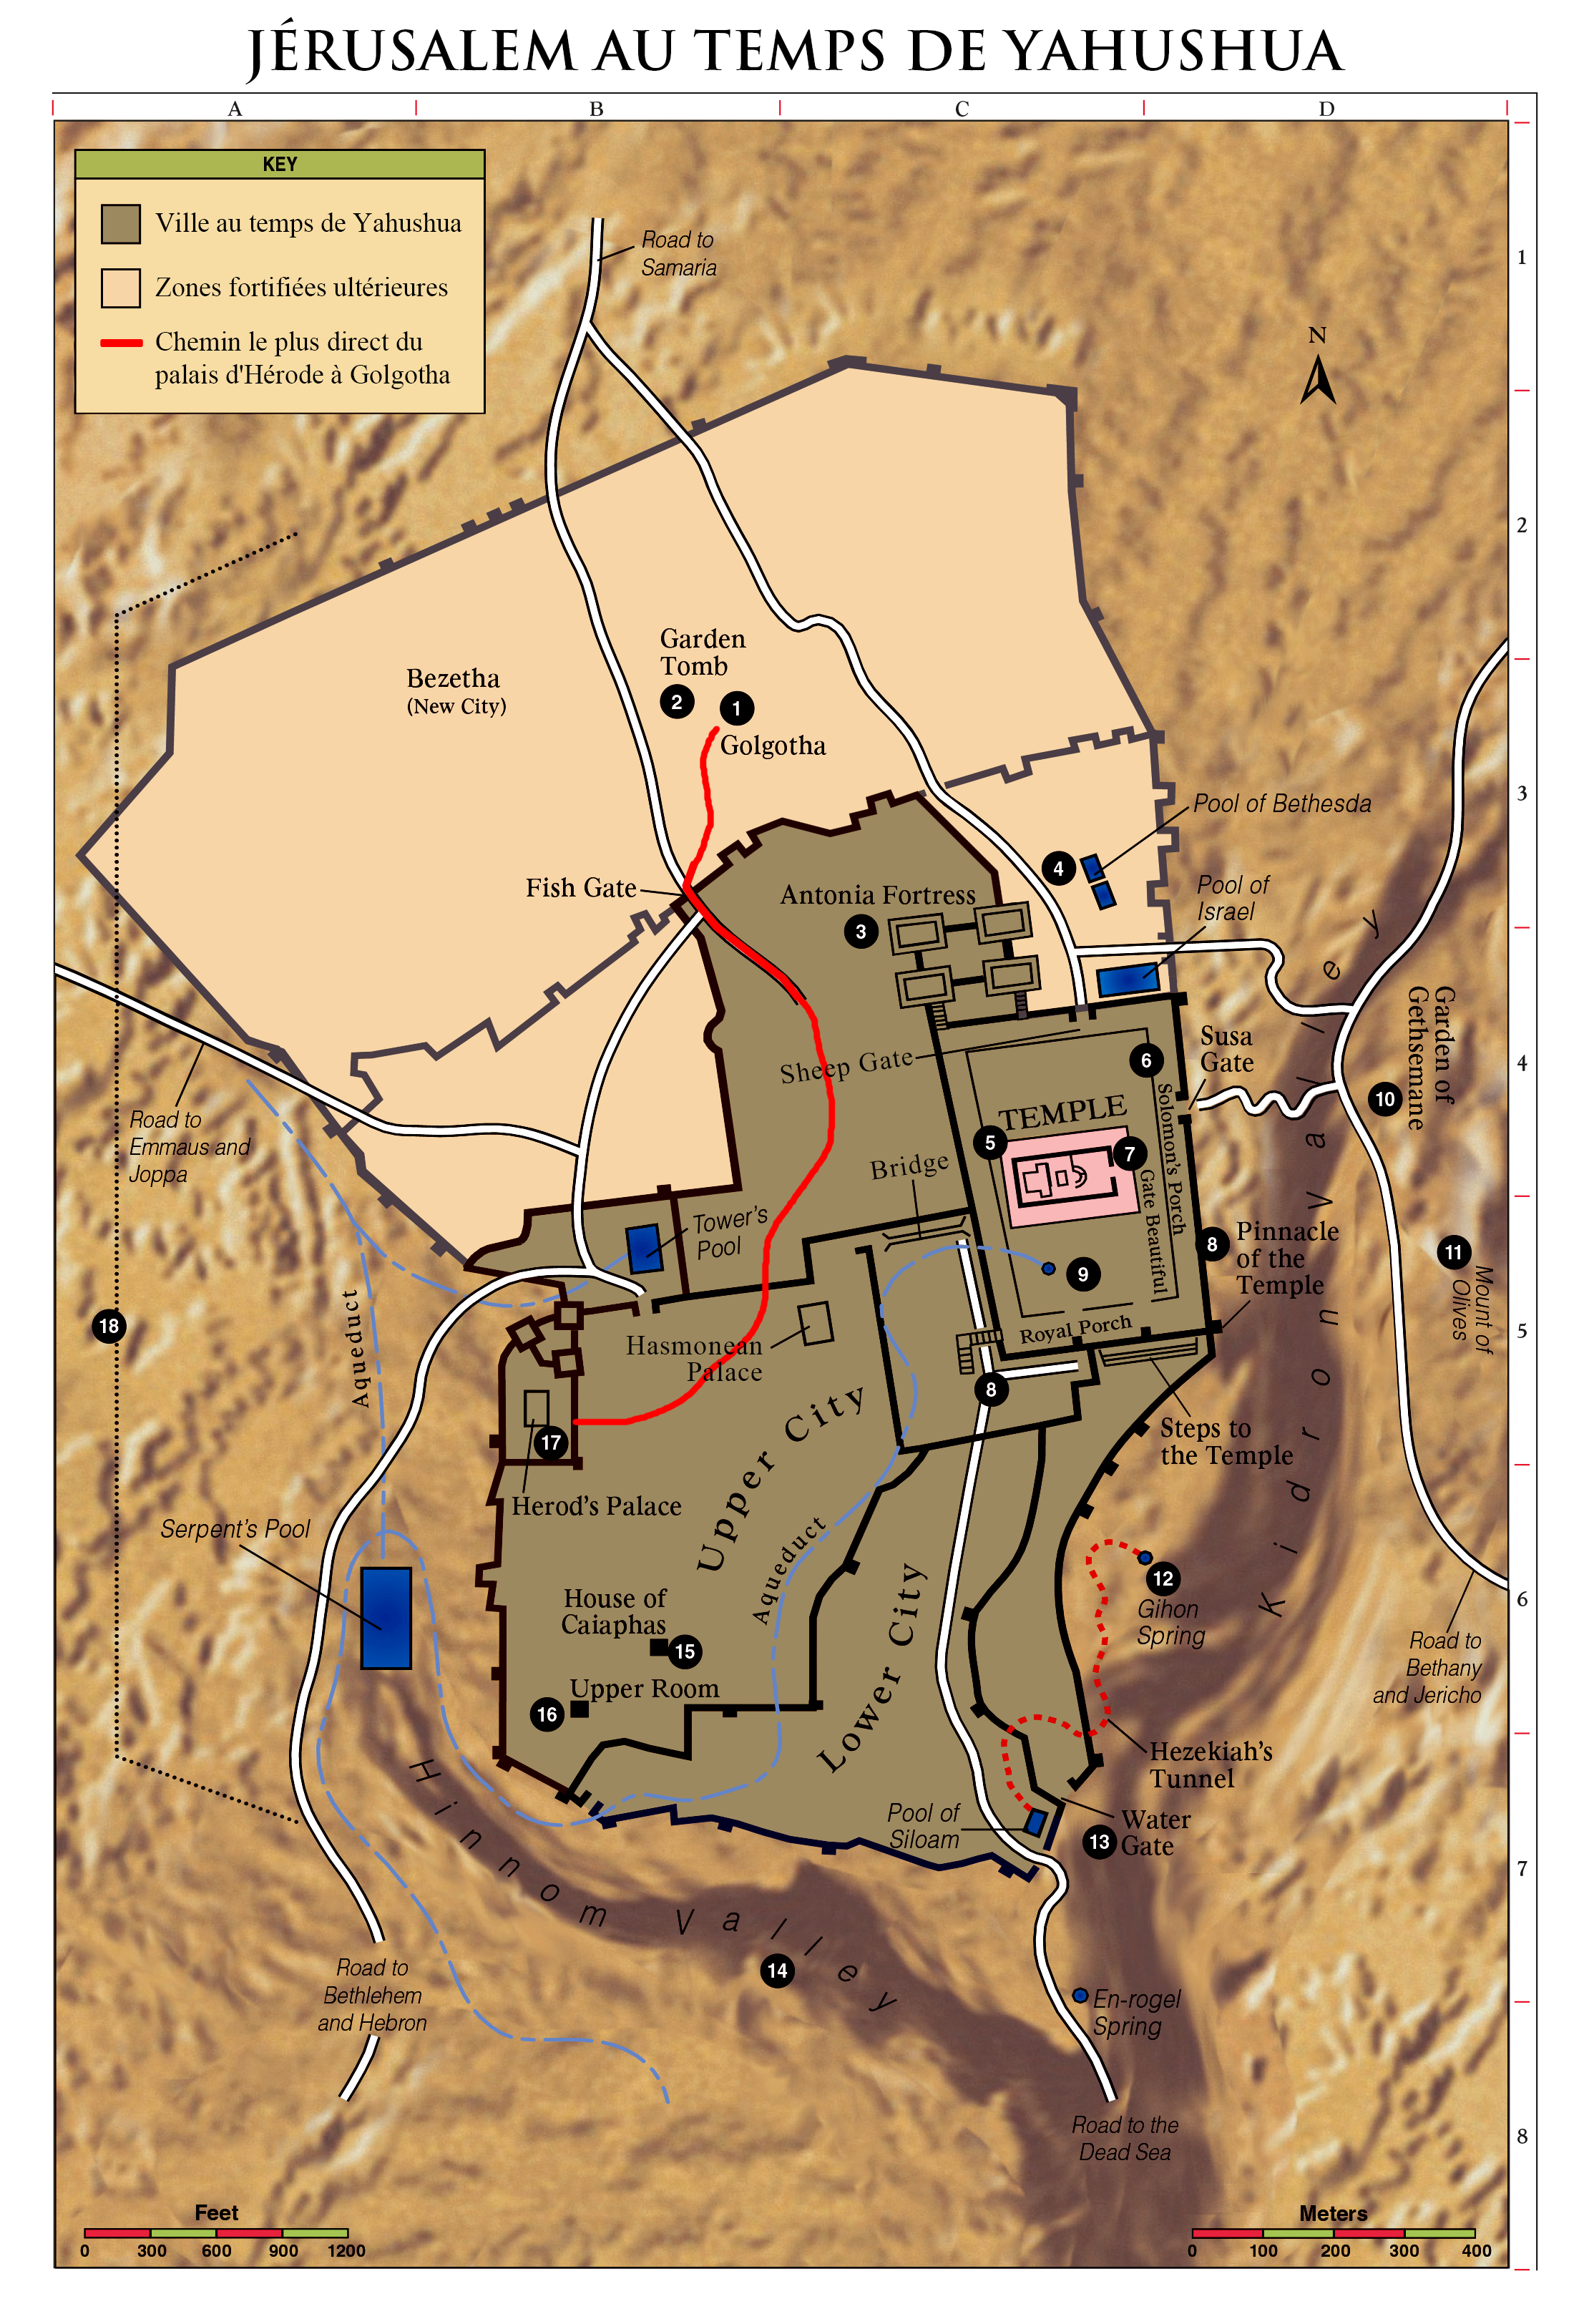 Route directe du palais d'Hérode au Golgotha